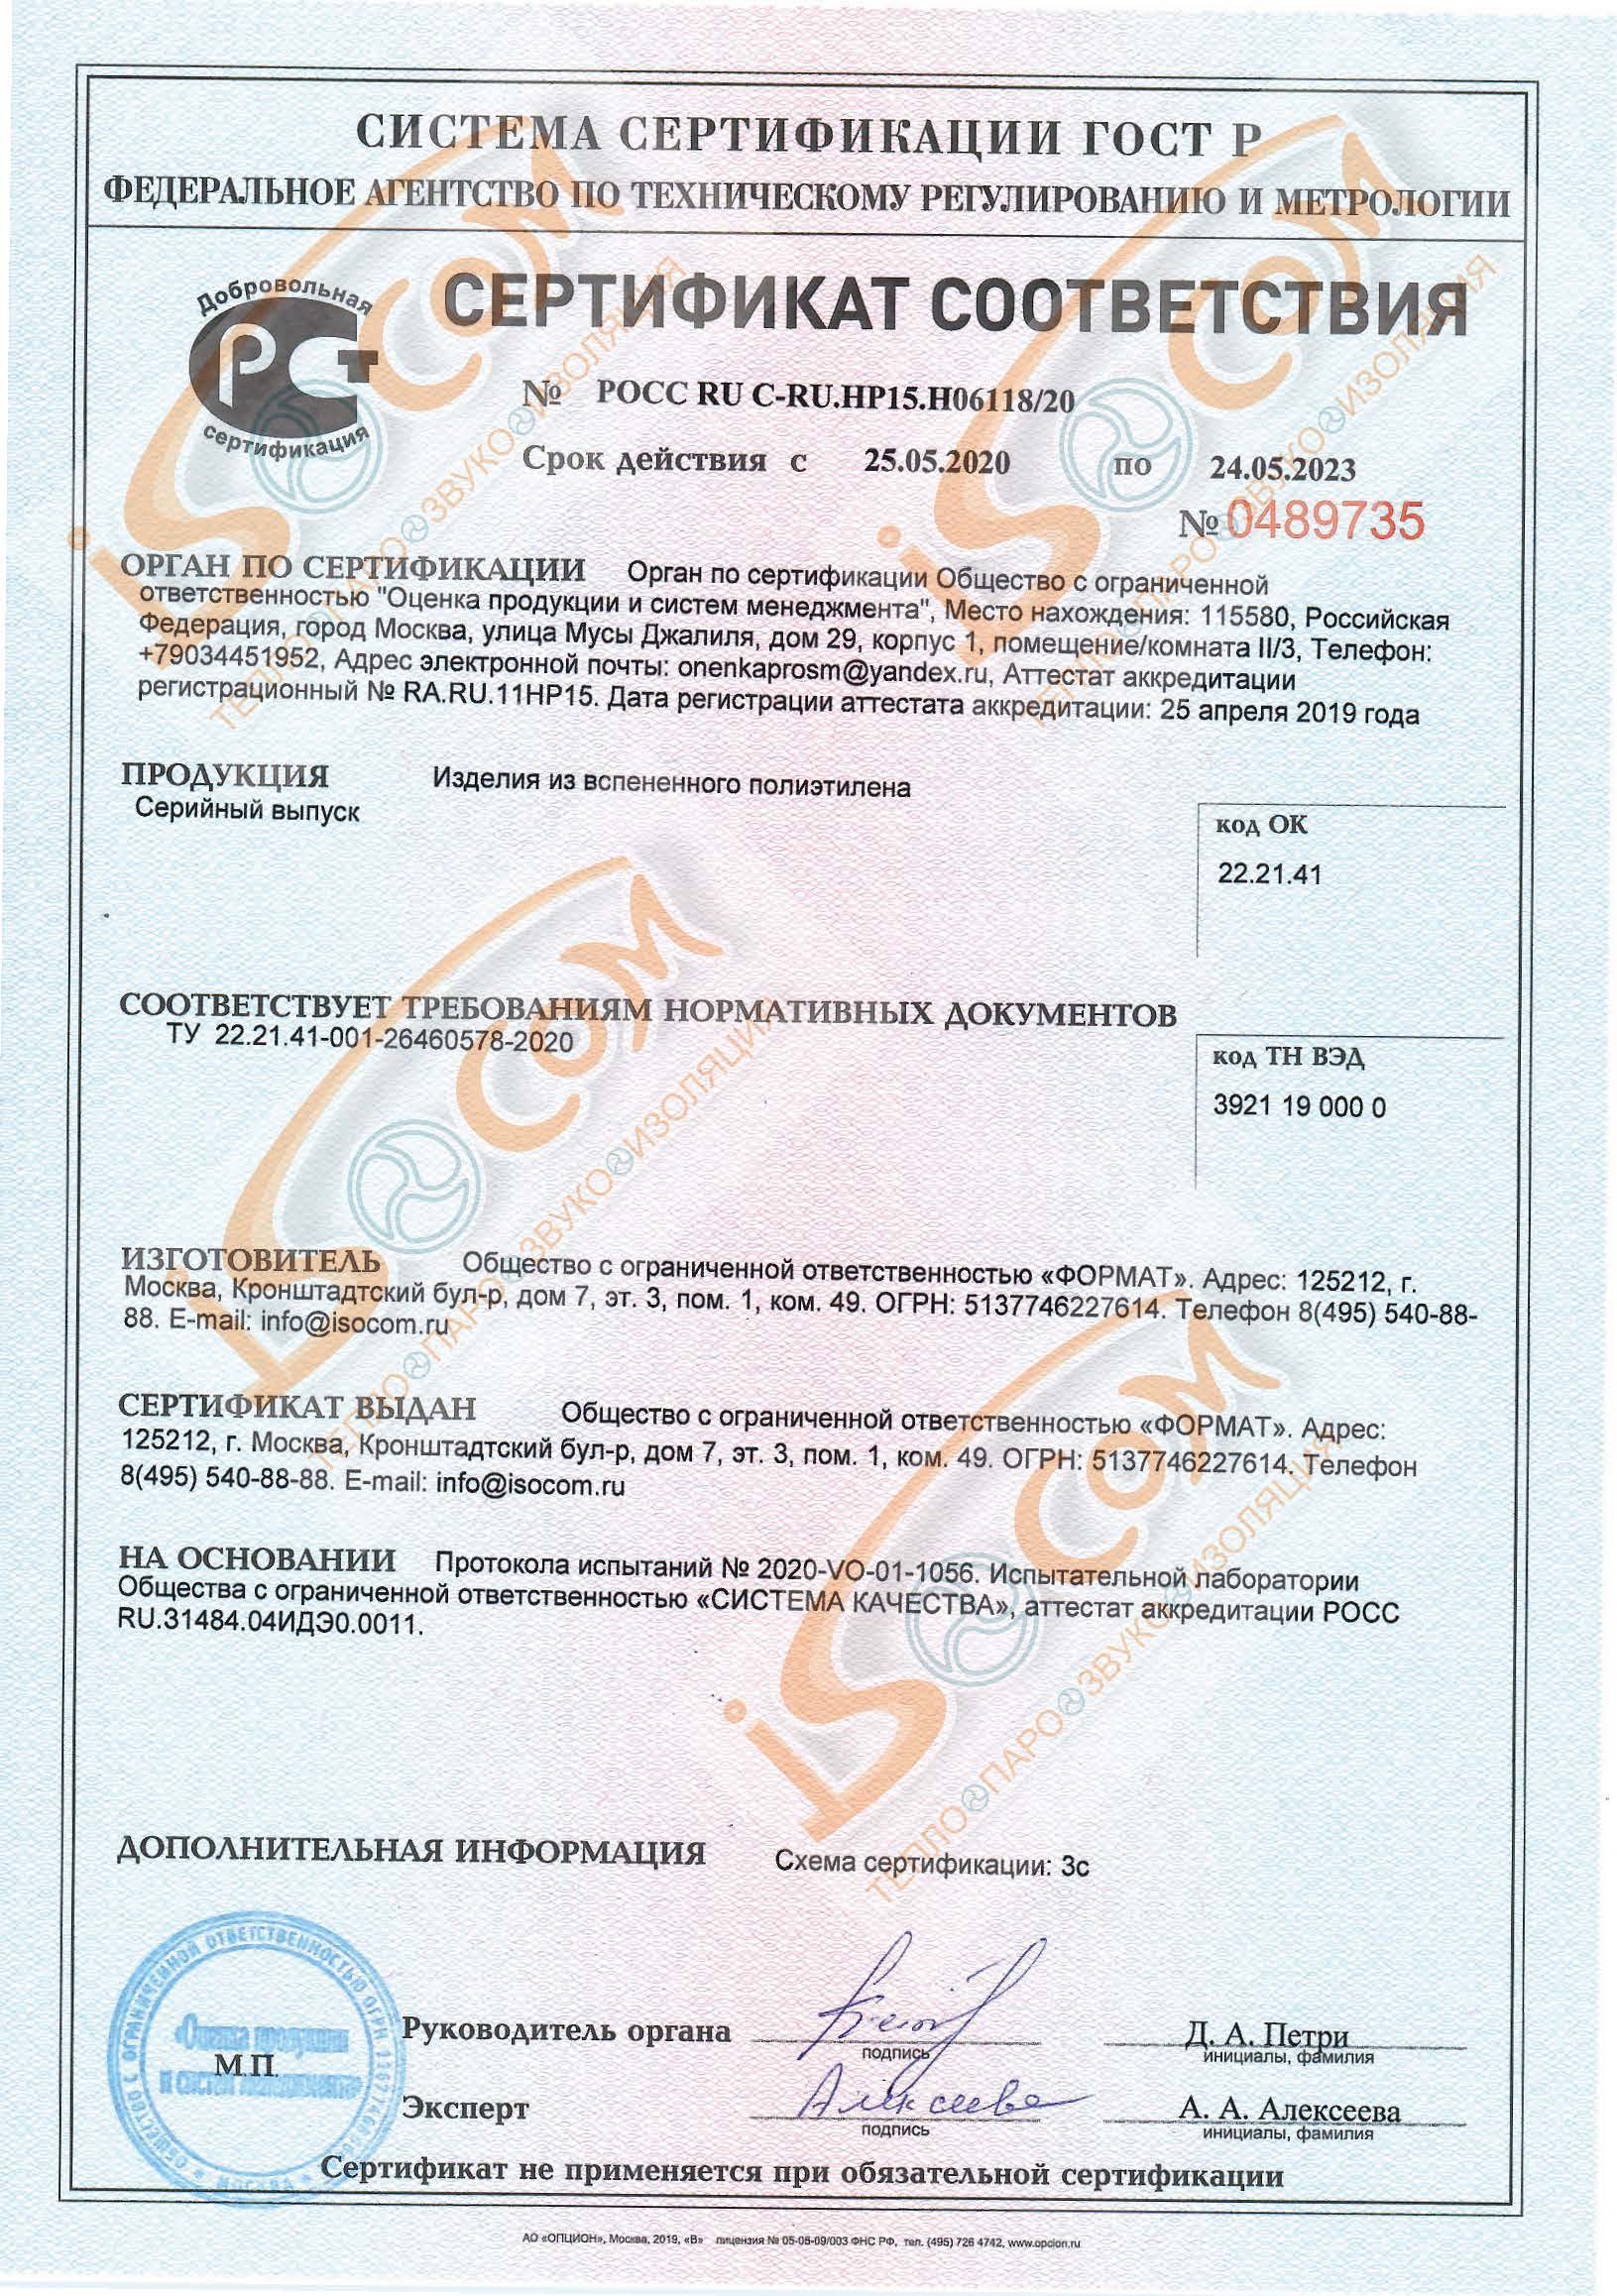 Сертификат - изделия из вспененного полипропилена по 24.05.2023.jpg